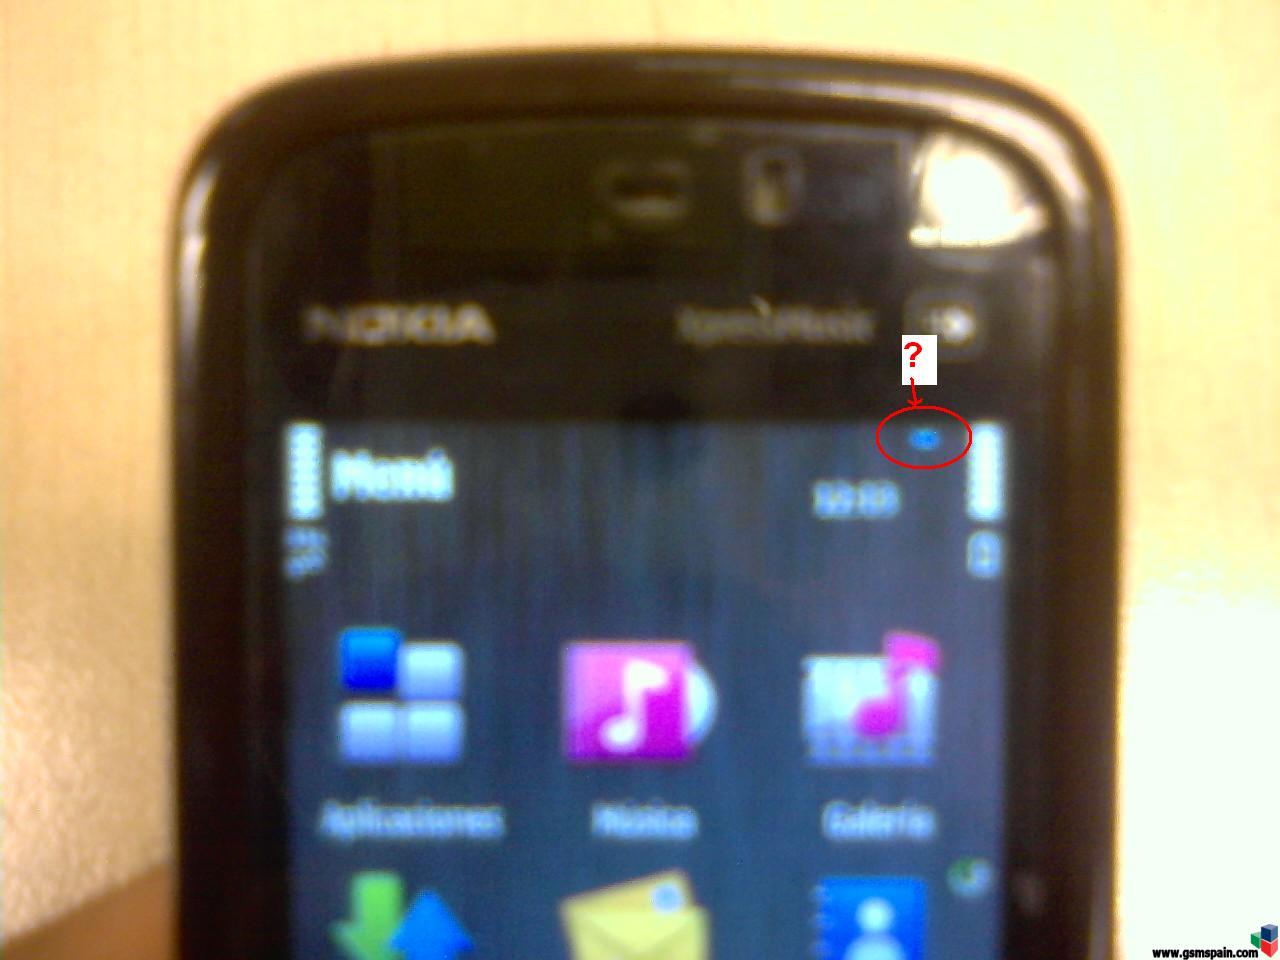 Icono extrao en Nokia 5800